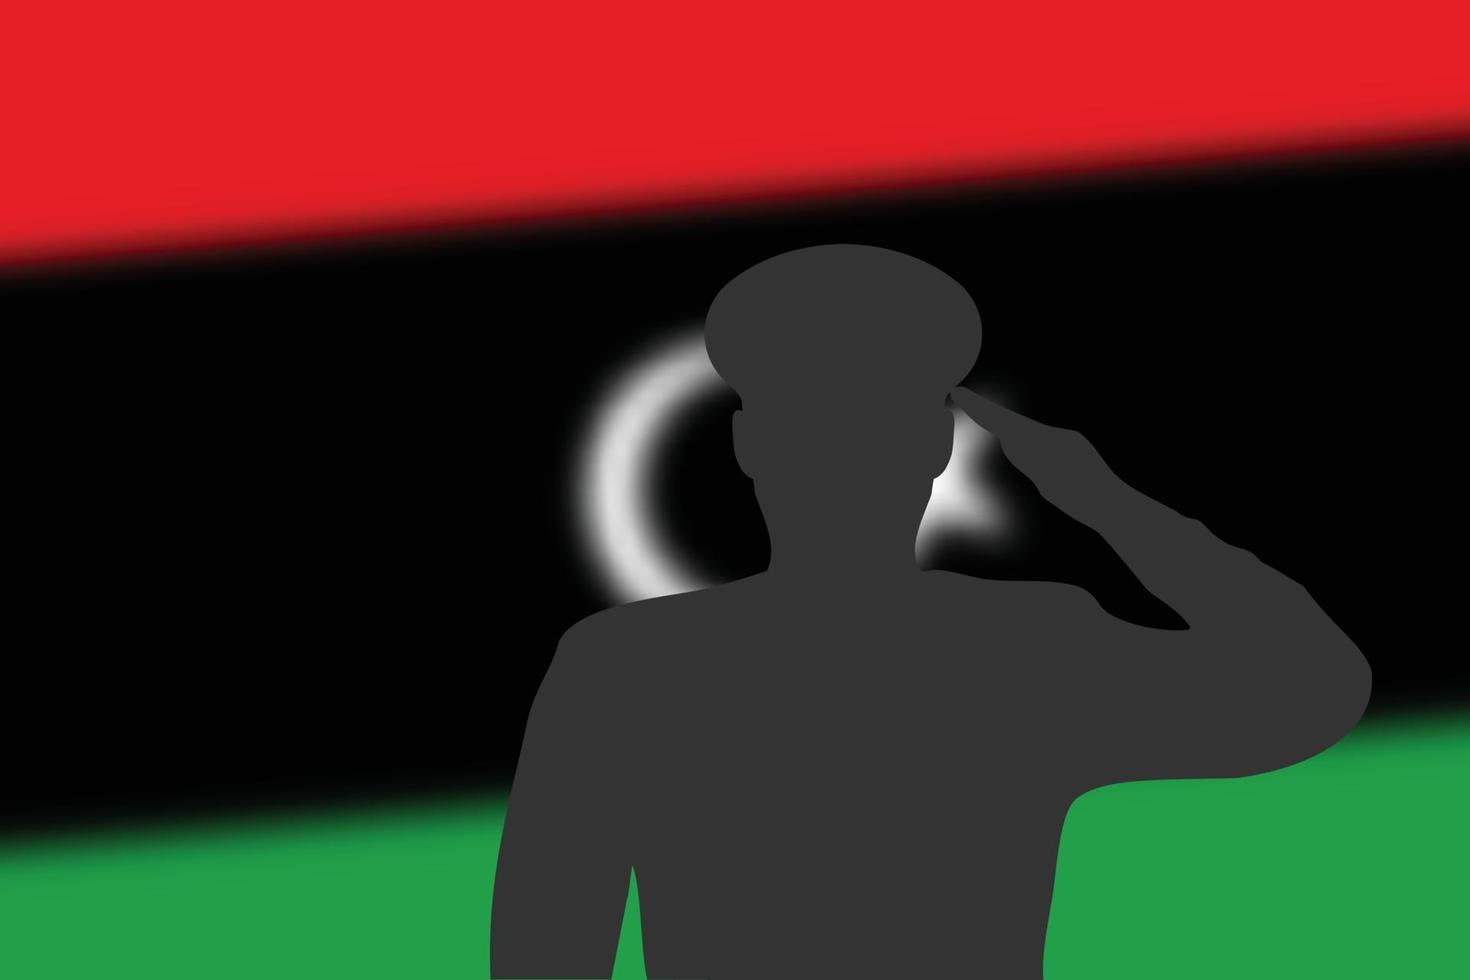 silueta de soldadura sobre fondo borroso con la bandera de libia. vector